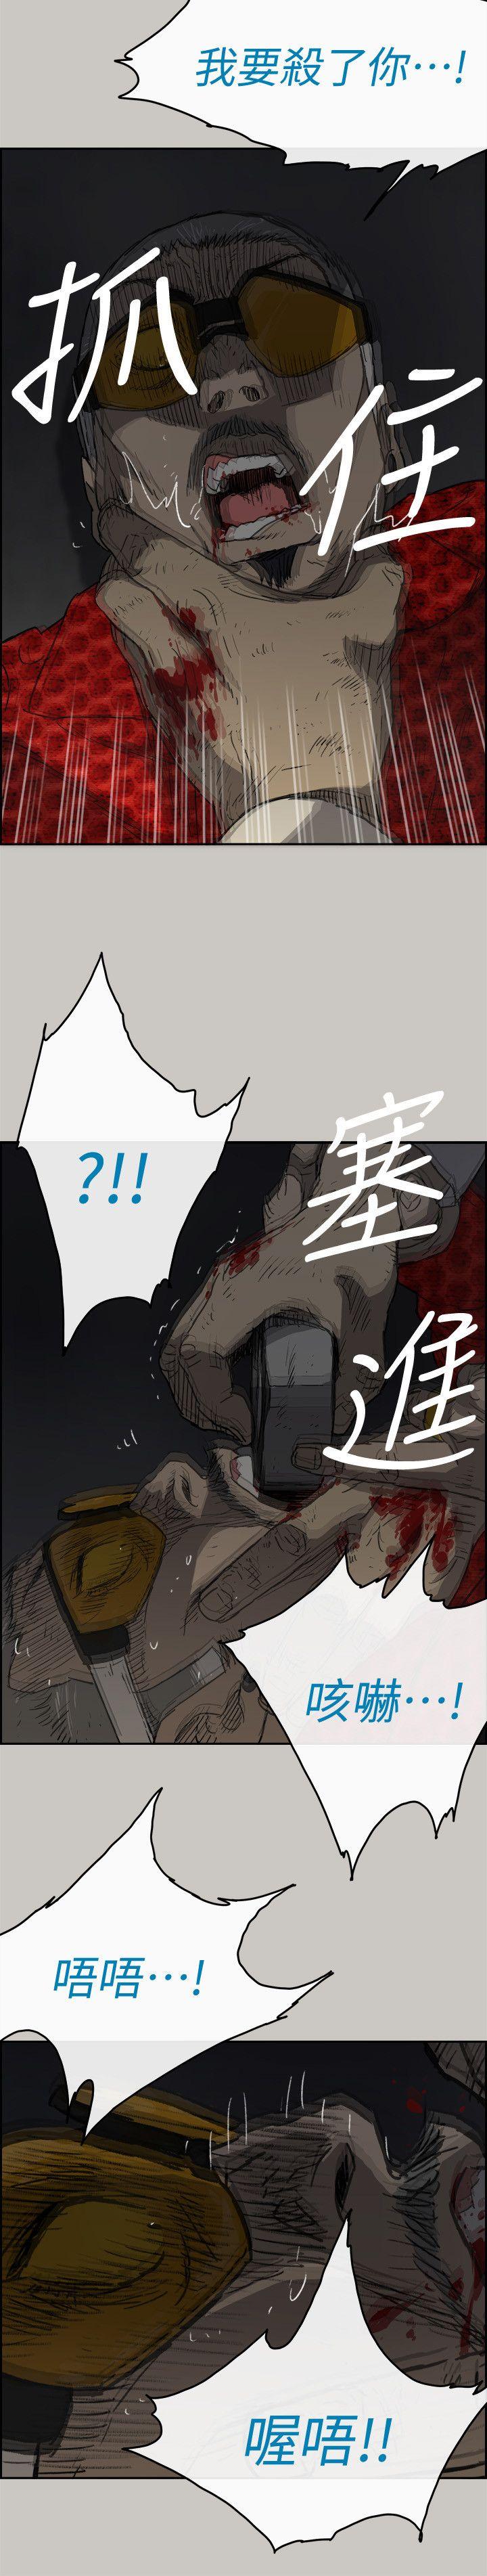 韩国污漫画 MAD:小姐與司機 第48话-去死吧，混帐东西 31